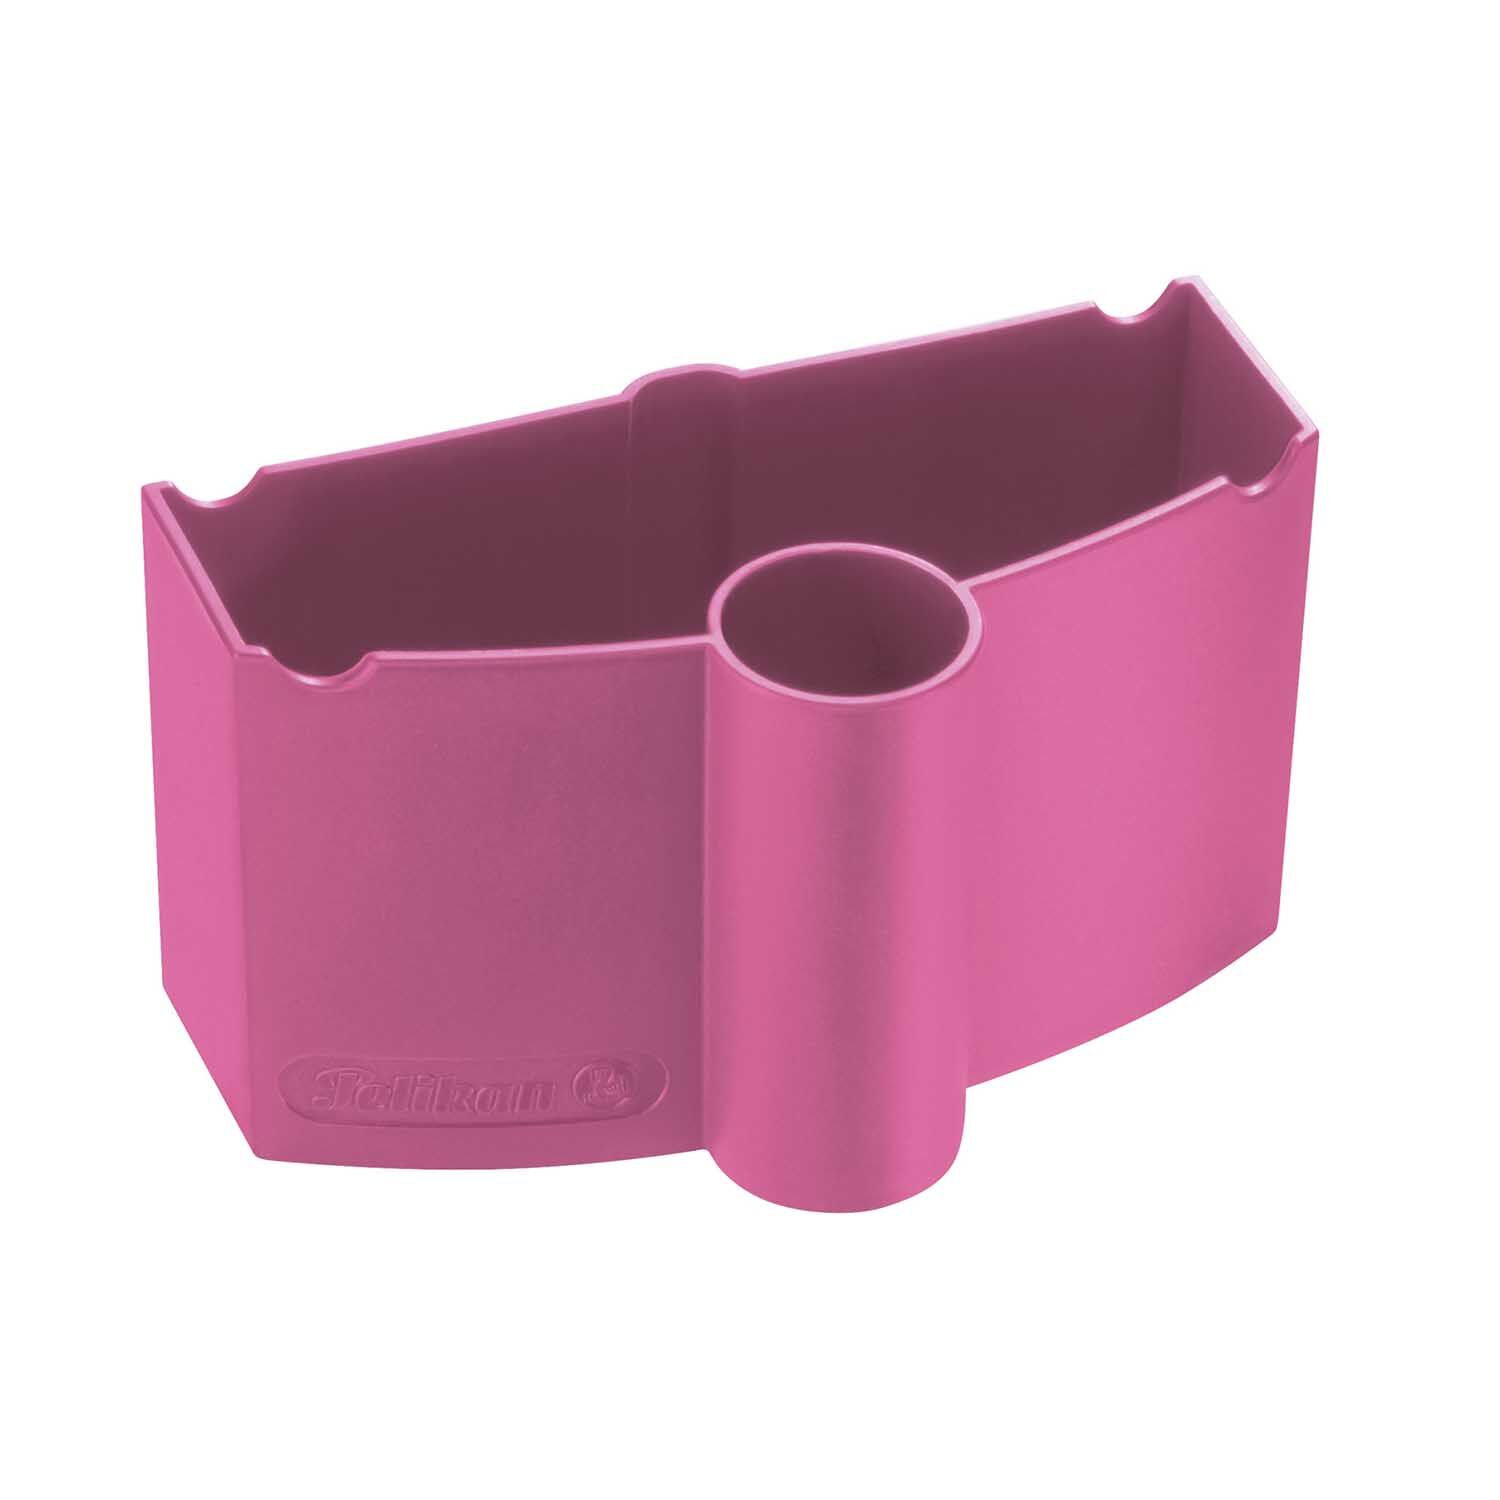 NEU Pelikan Wasserbecher mit Pinselhalter fr K12 und K24, Pink